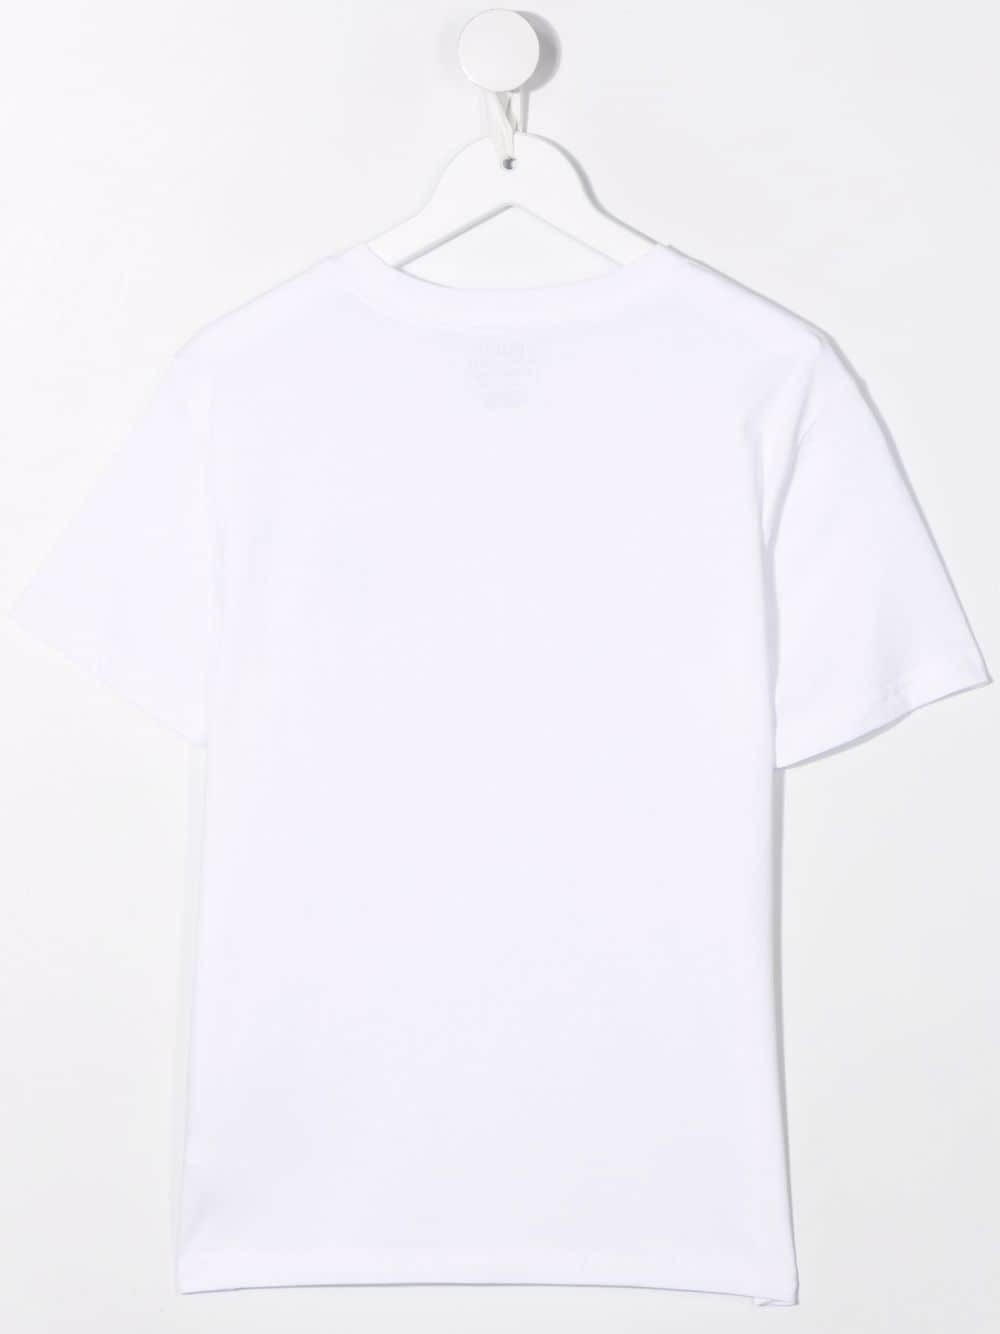 White short sleeves T-shirt